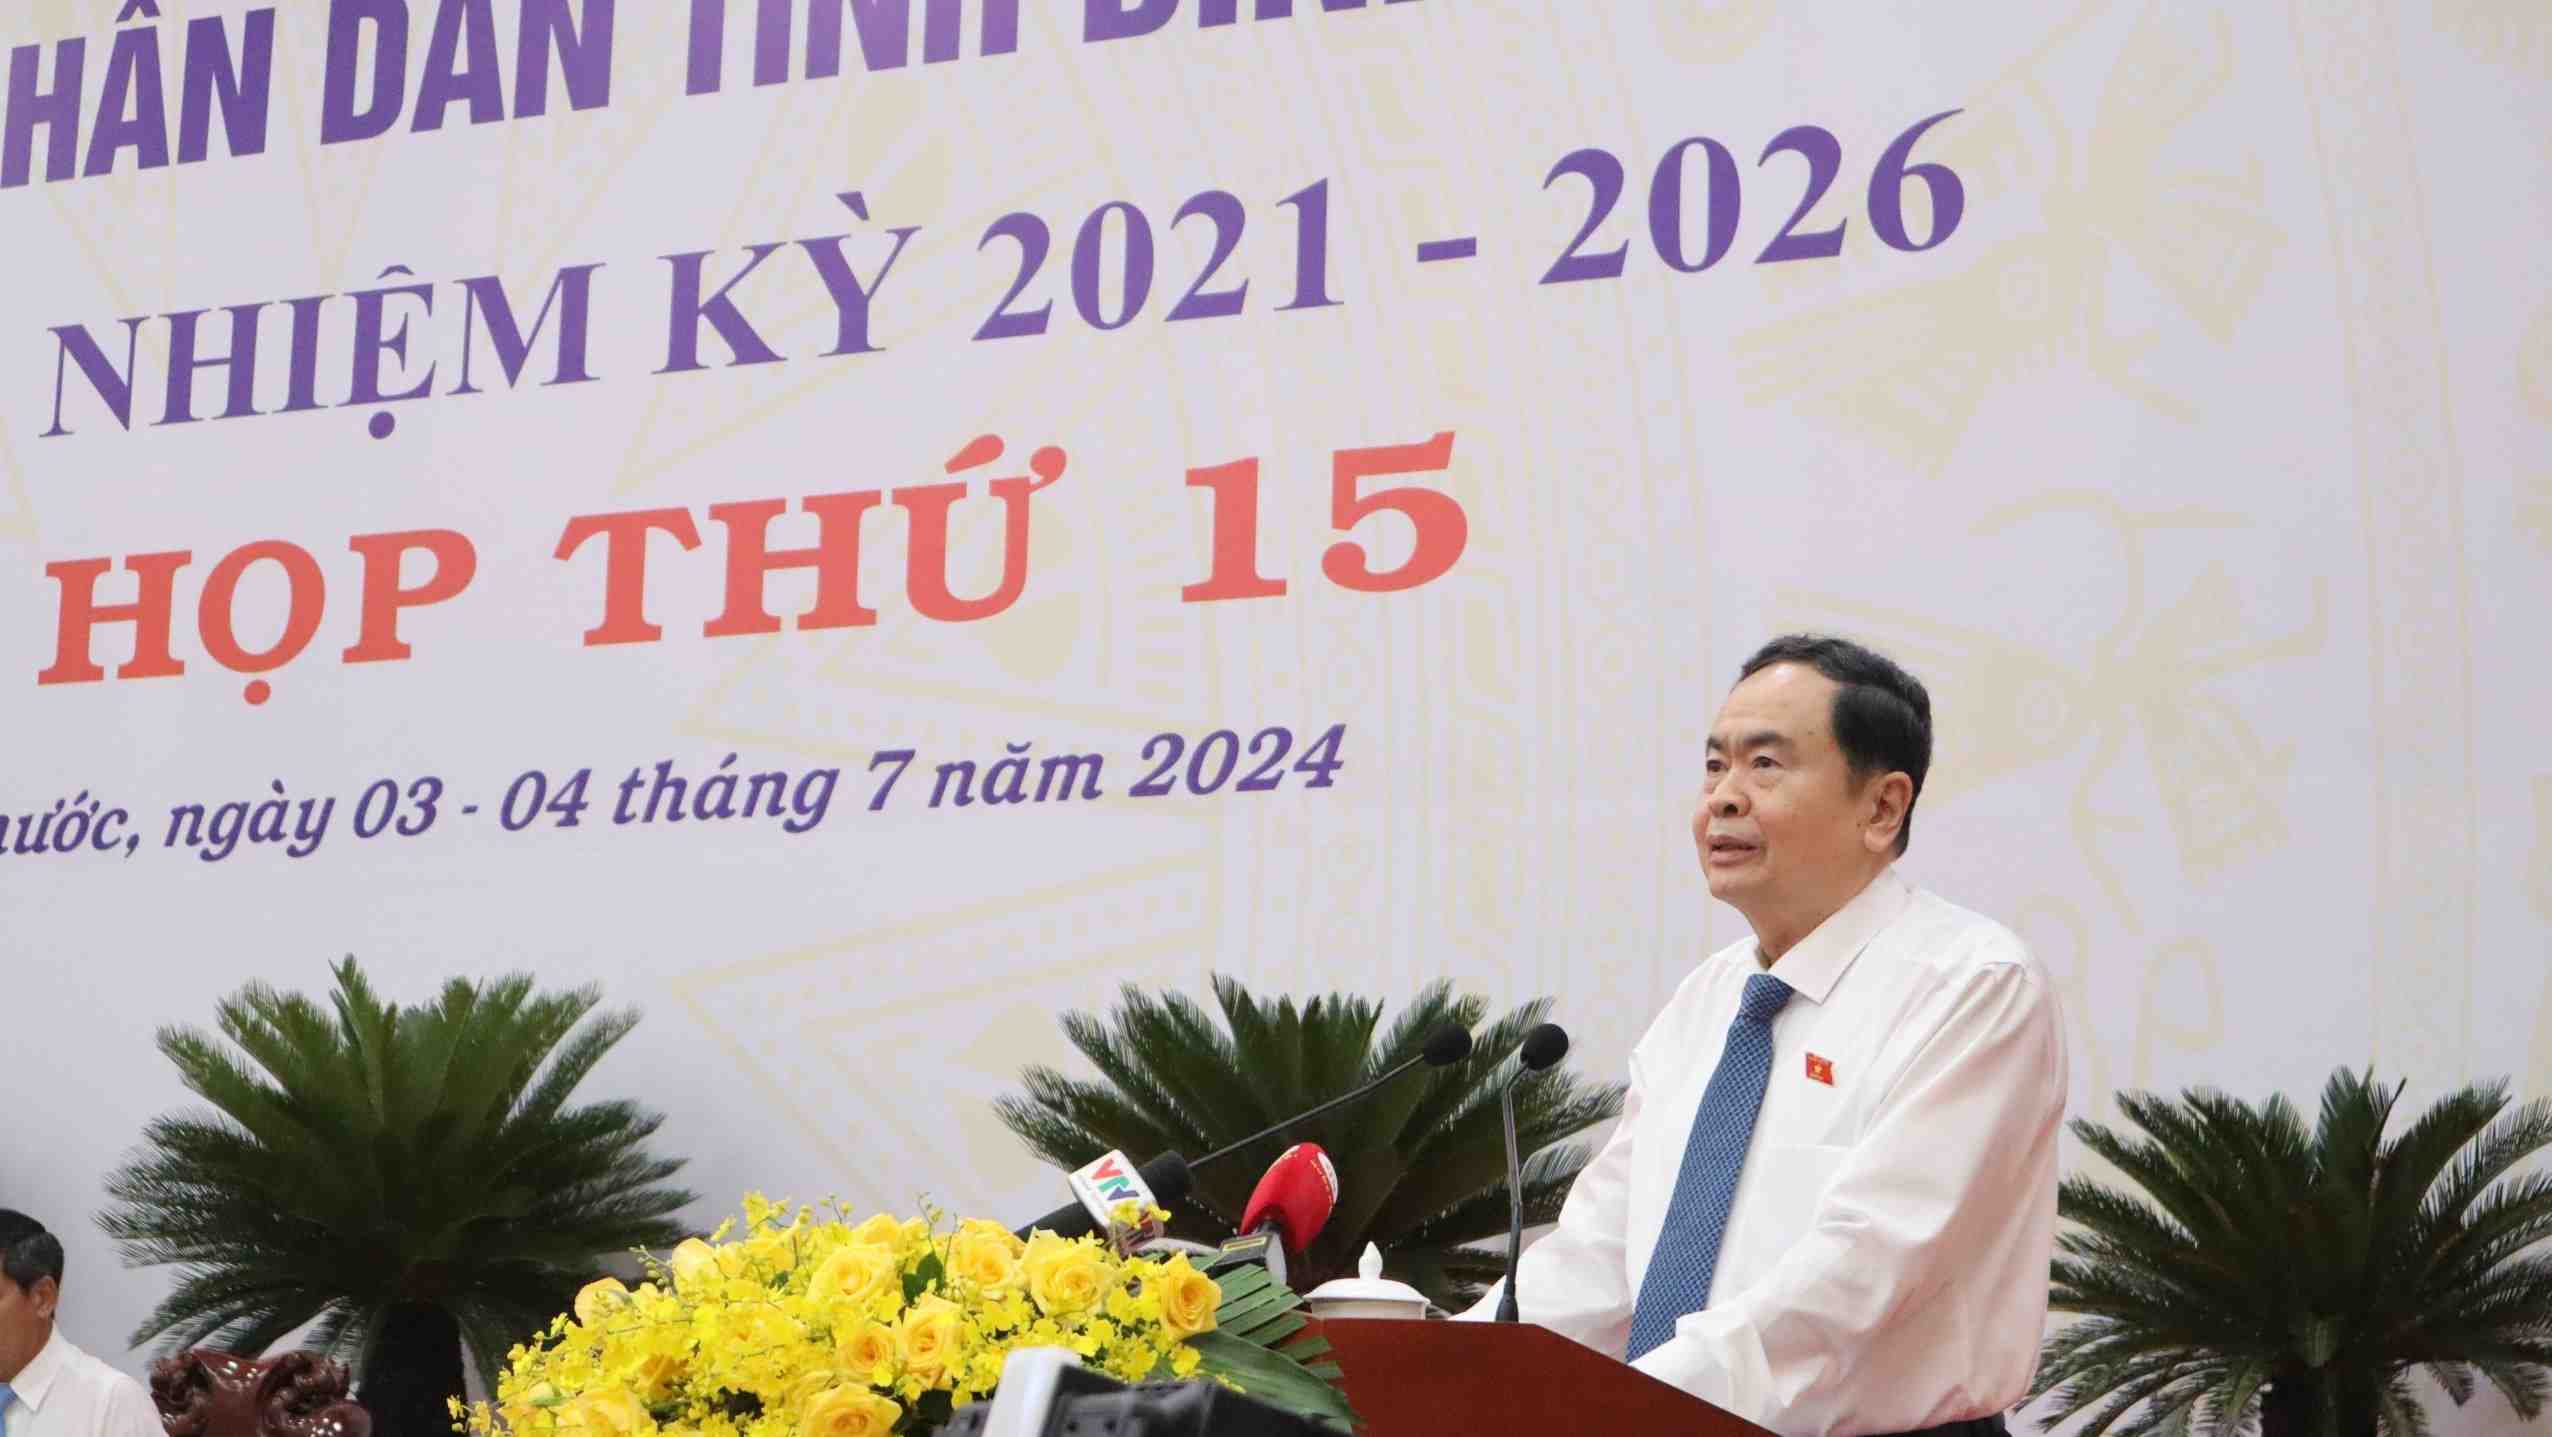 Chủ tịch Quốc hội Trần Thanh Mẫn đã phát biểu chỉ đạo tại kỳ họp thứ 15 (kỳ họp giữa năm), HĐND tỉnh Bình Phước. Ảnh: Dương Bình